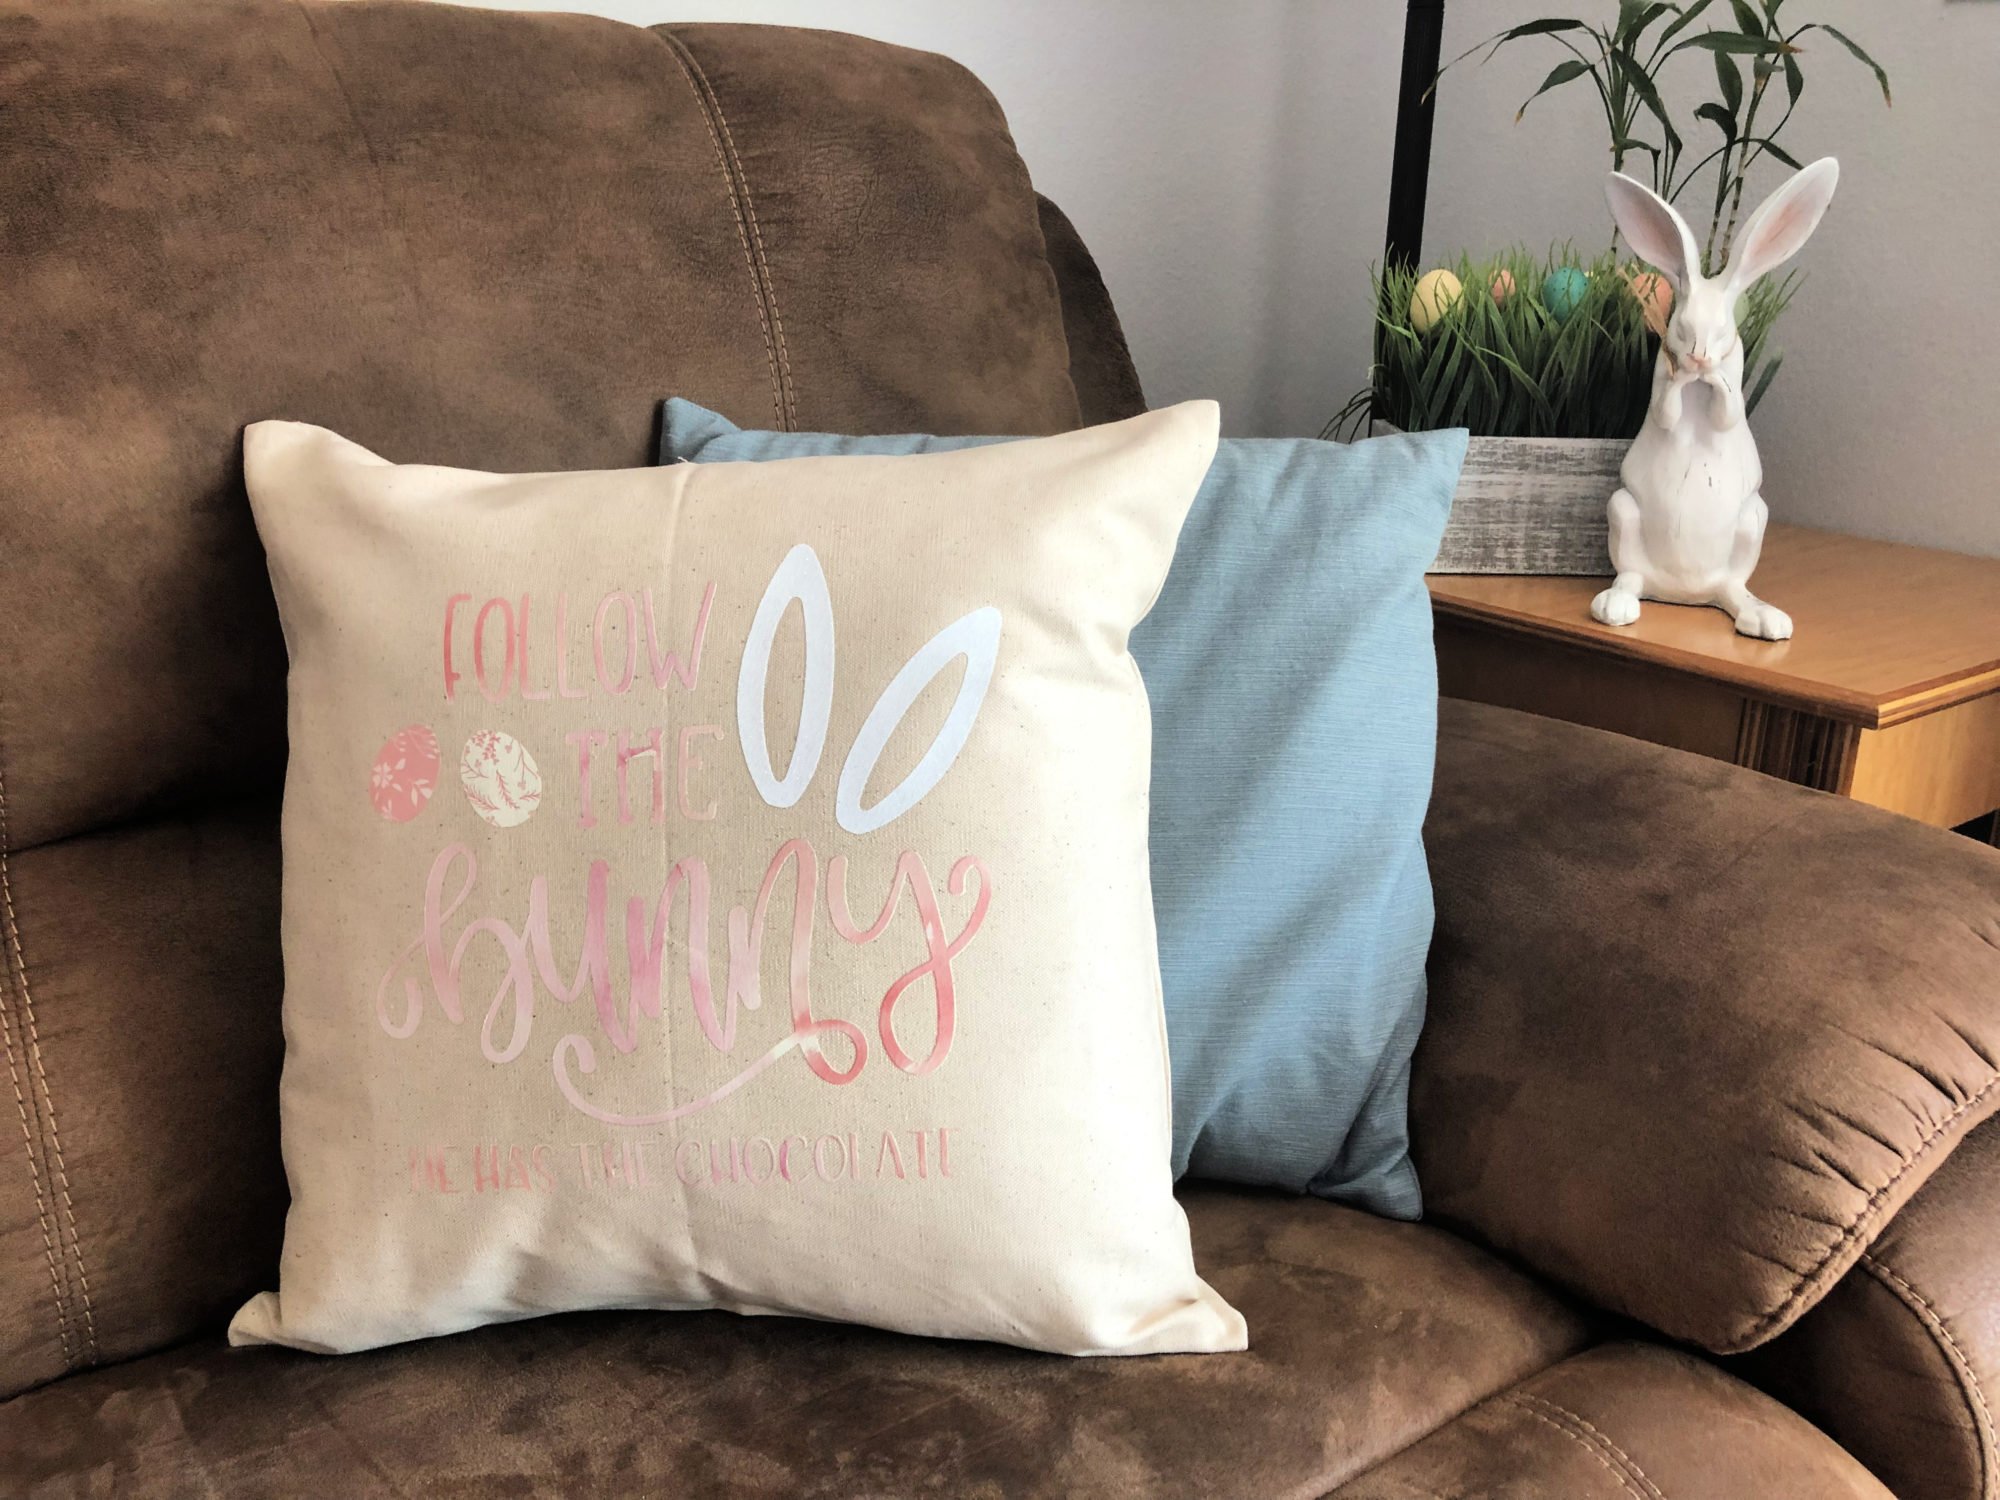 DIY Follow the Bunny Pillow